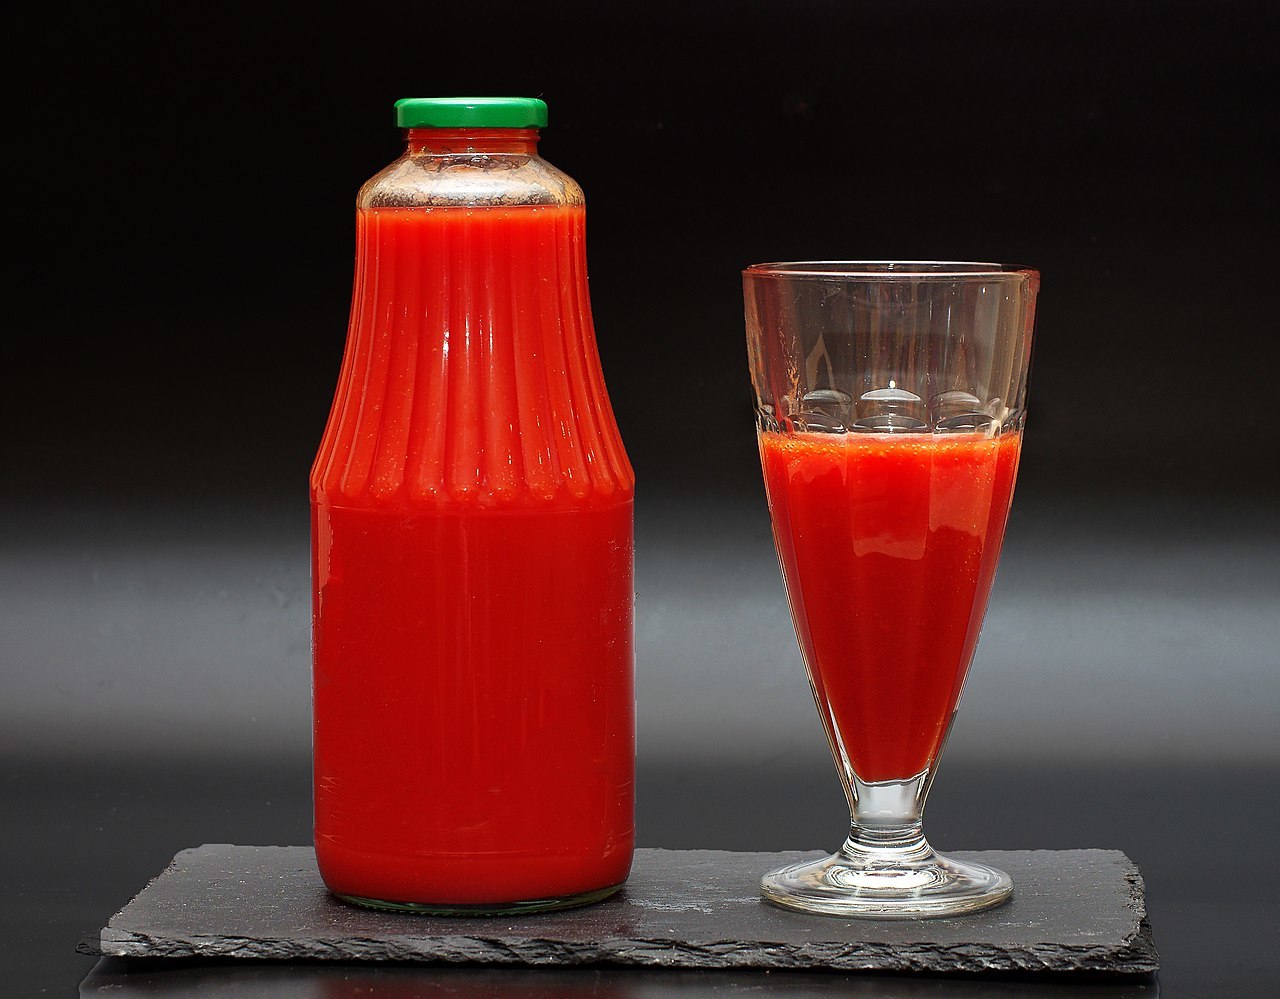 Ученые выяснили, что употребление томатного сока натощак способствует снижению уровня холестерина в организме